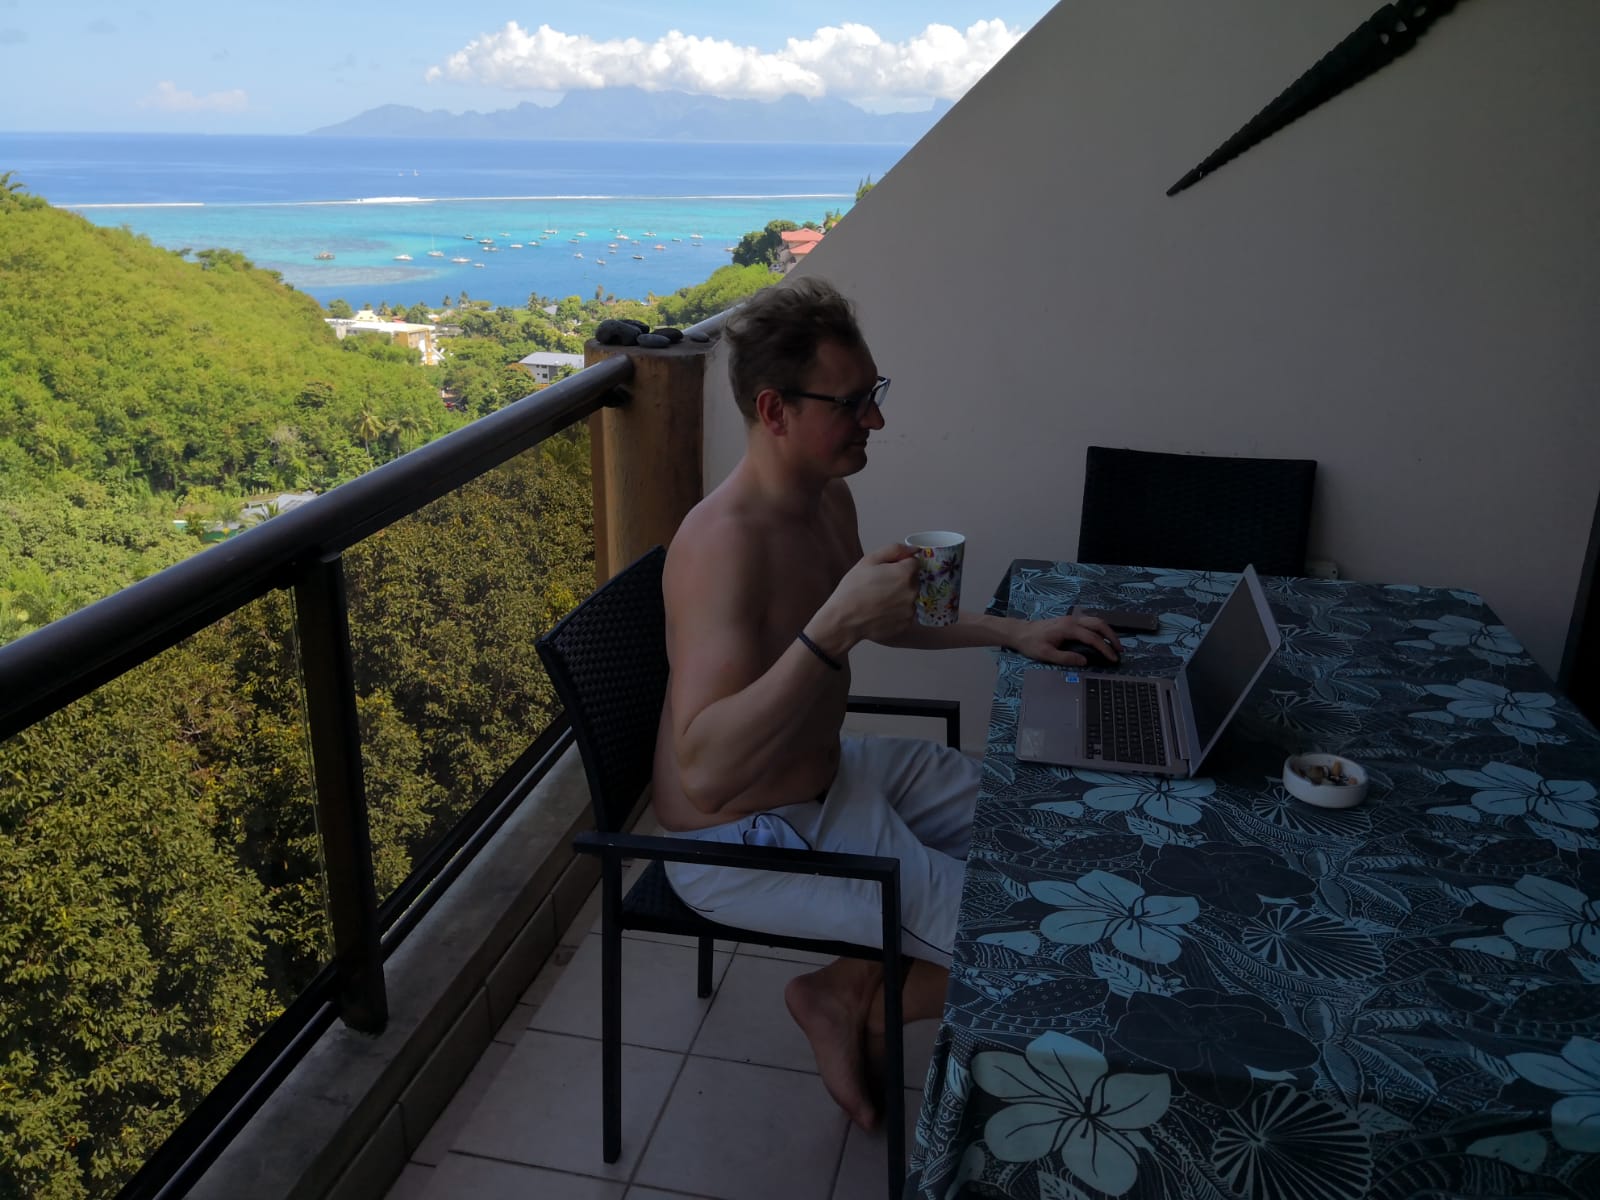 Nuta e pausas na praia: o melhor lugar de onde trabalhei como nômade digital é ... Taiti! : Nuta e pausas na praia: o melhor lugar de onde trabalhei como nômade digital é ... Taiti!